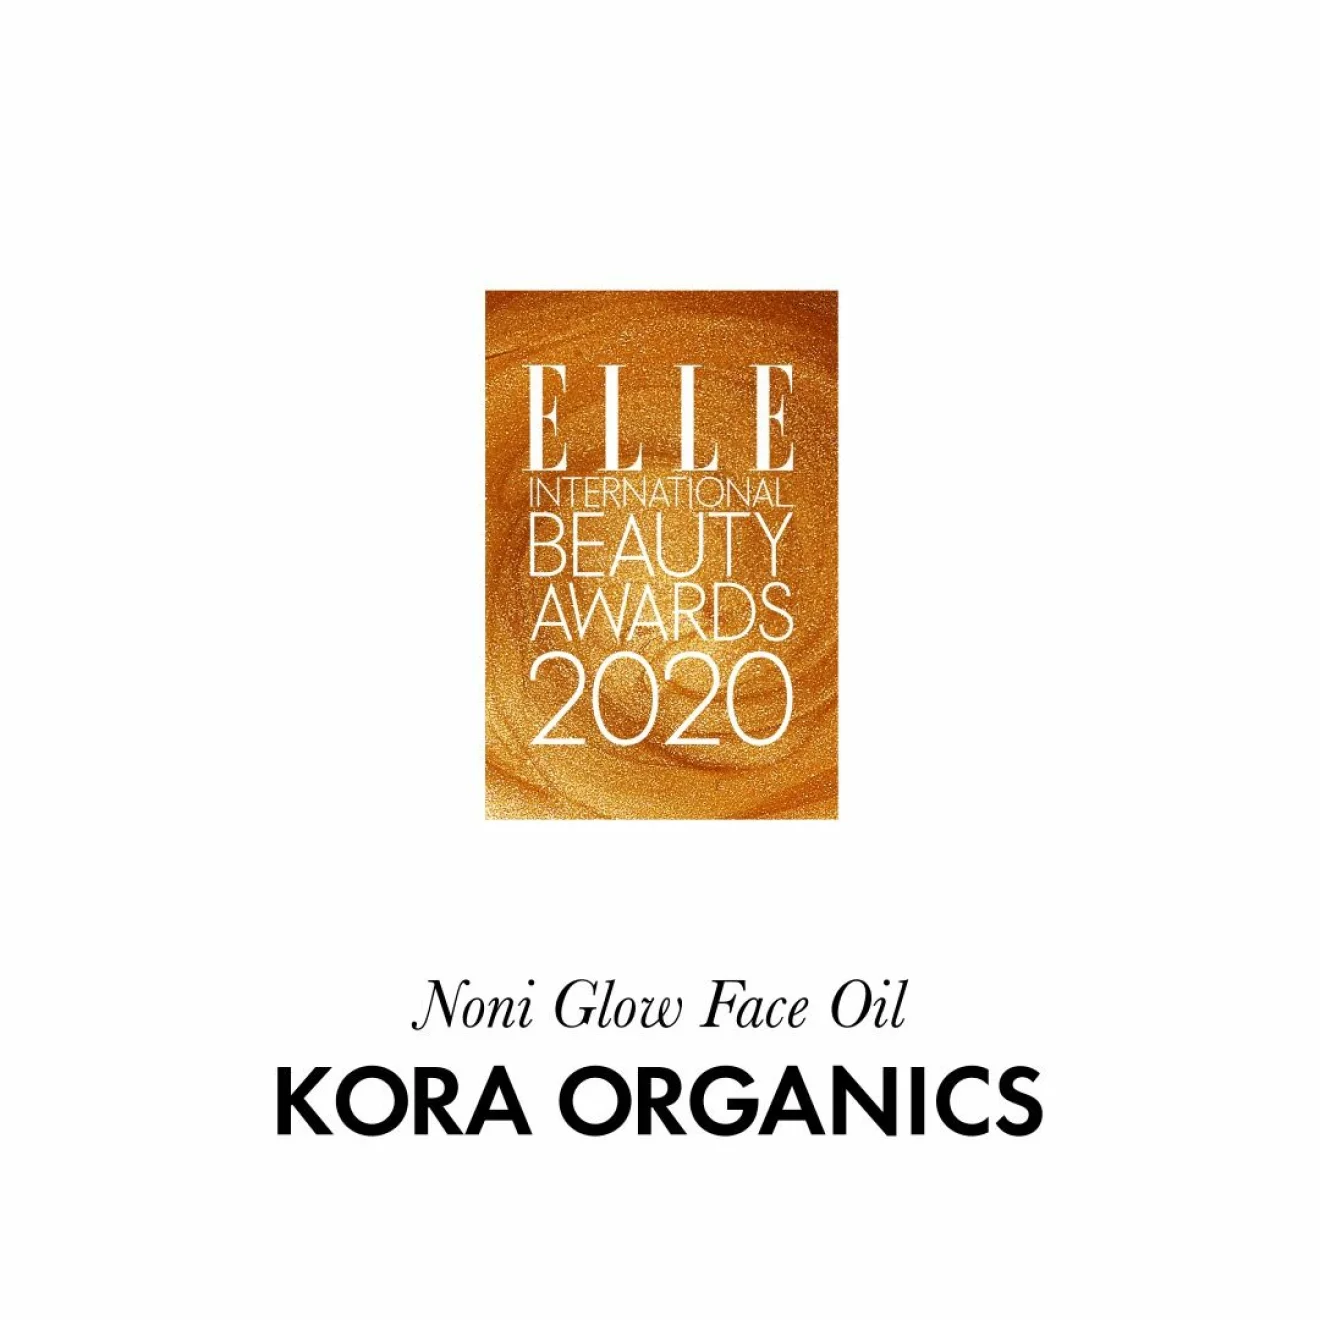 Årets ”gröna” ansiktsvård Noni glow face oil från Kora Organics.